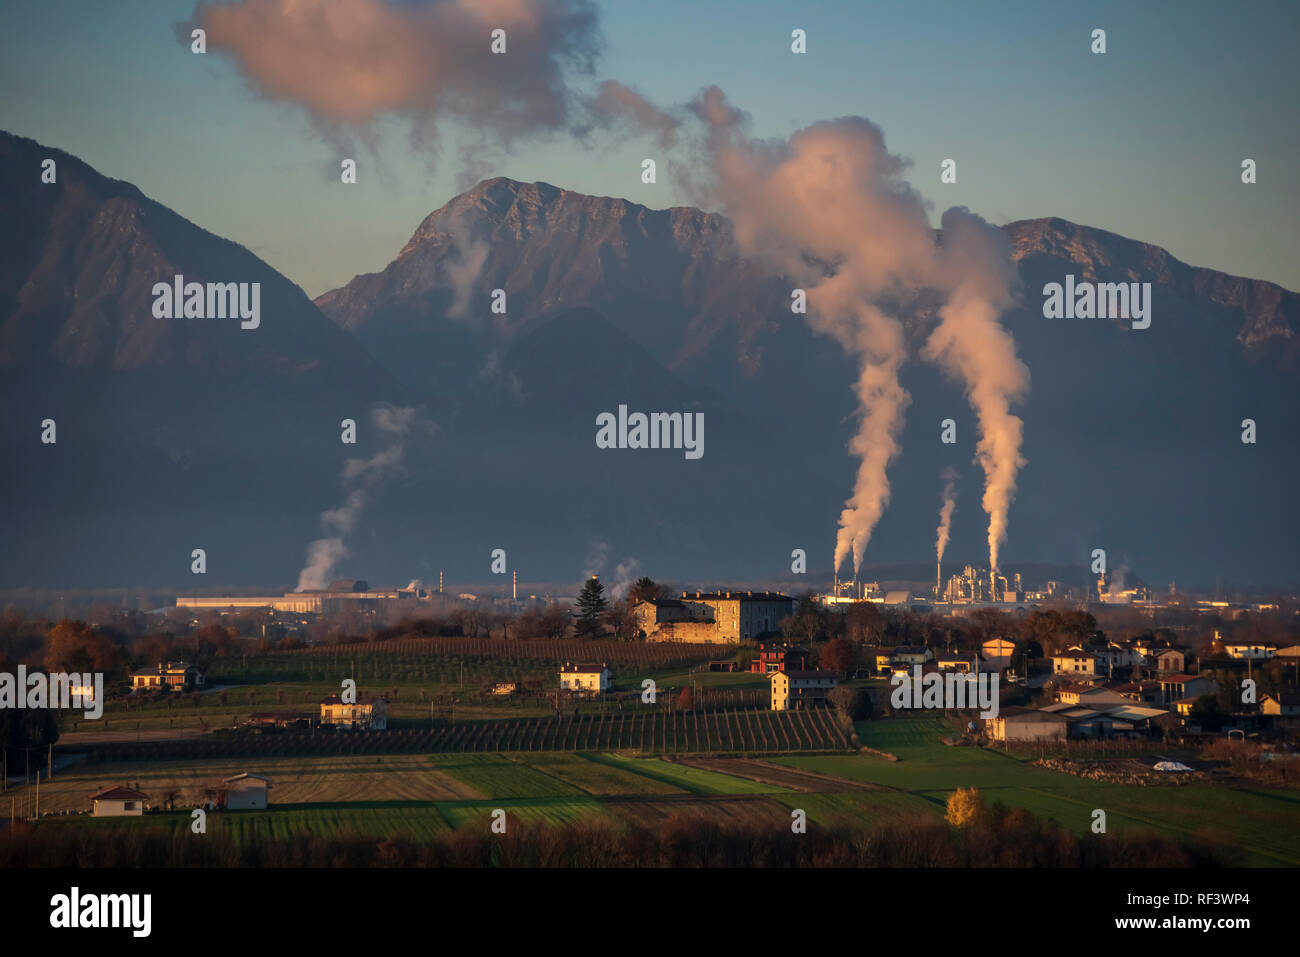 La pianura friulana con Alpi e Prealpi in background, la fabbrica di Fantoni e Ferriere Nord in Osoppo (Italia) sono visibili. Foto Stock